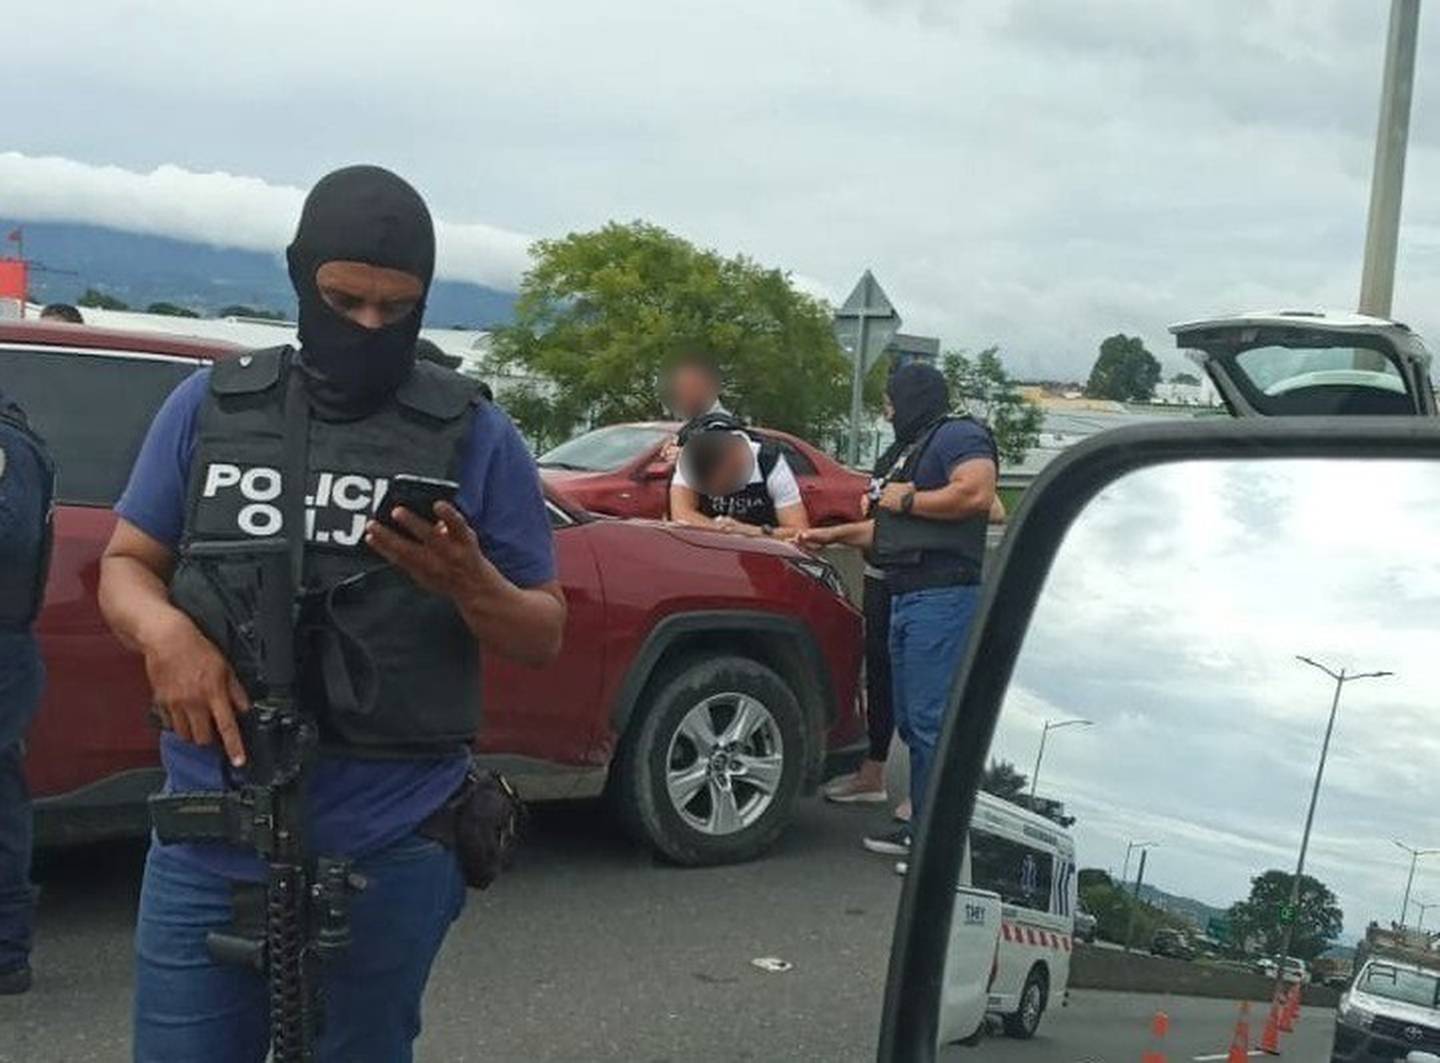 El extranjero fue detenido cerca del peaje de la ruta 27 en Escazú. Foto Policías de Costa Rica.